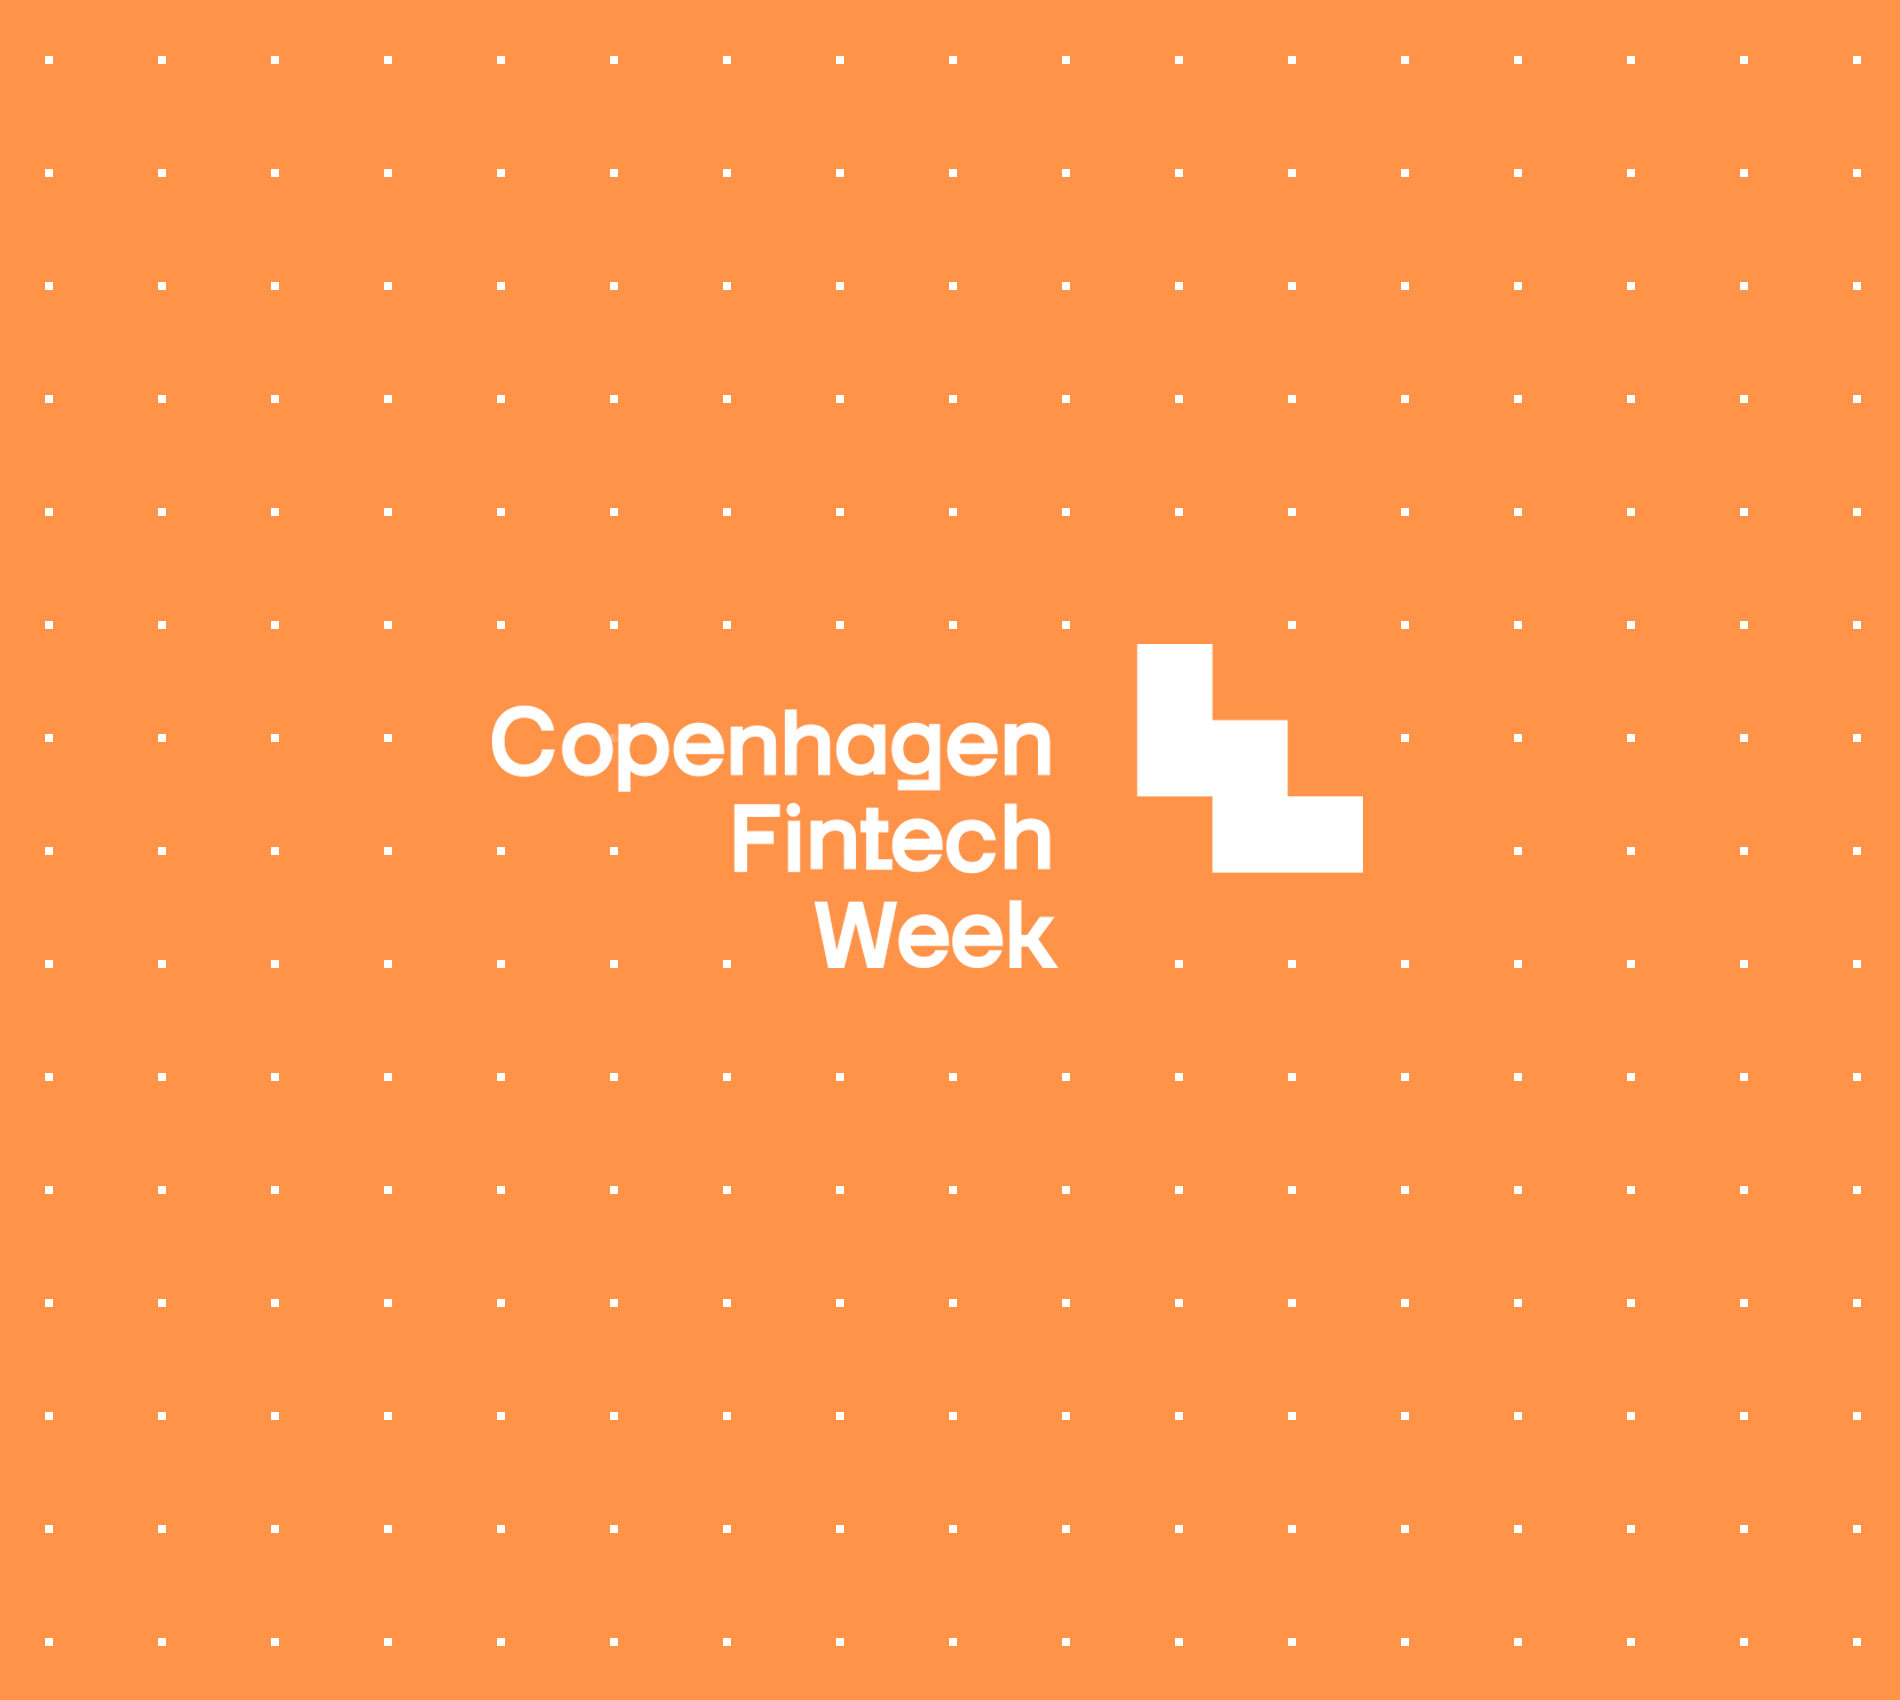 Copenhagen Fintech Week 2020 | September, 2020